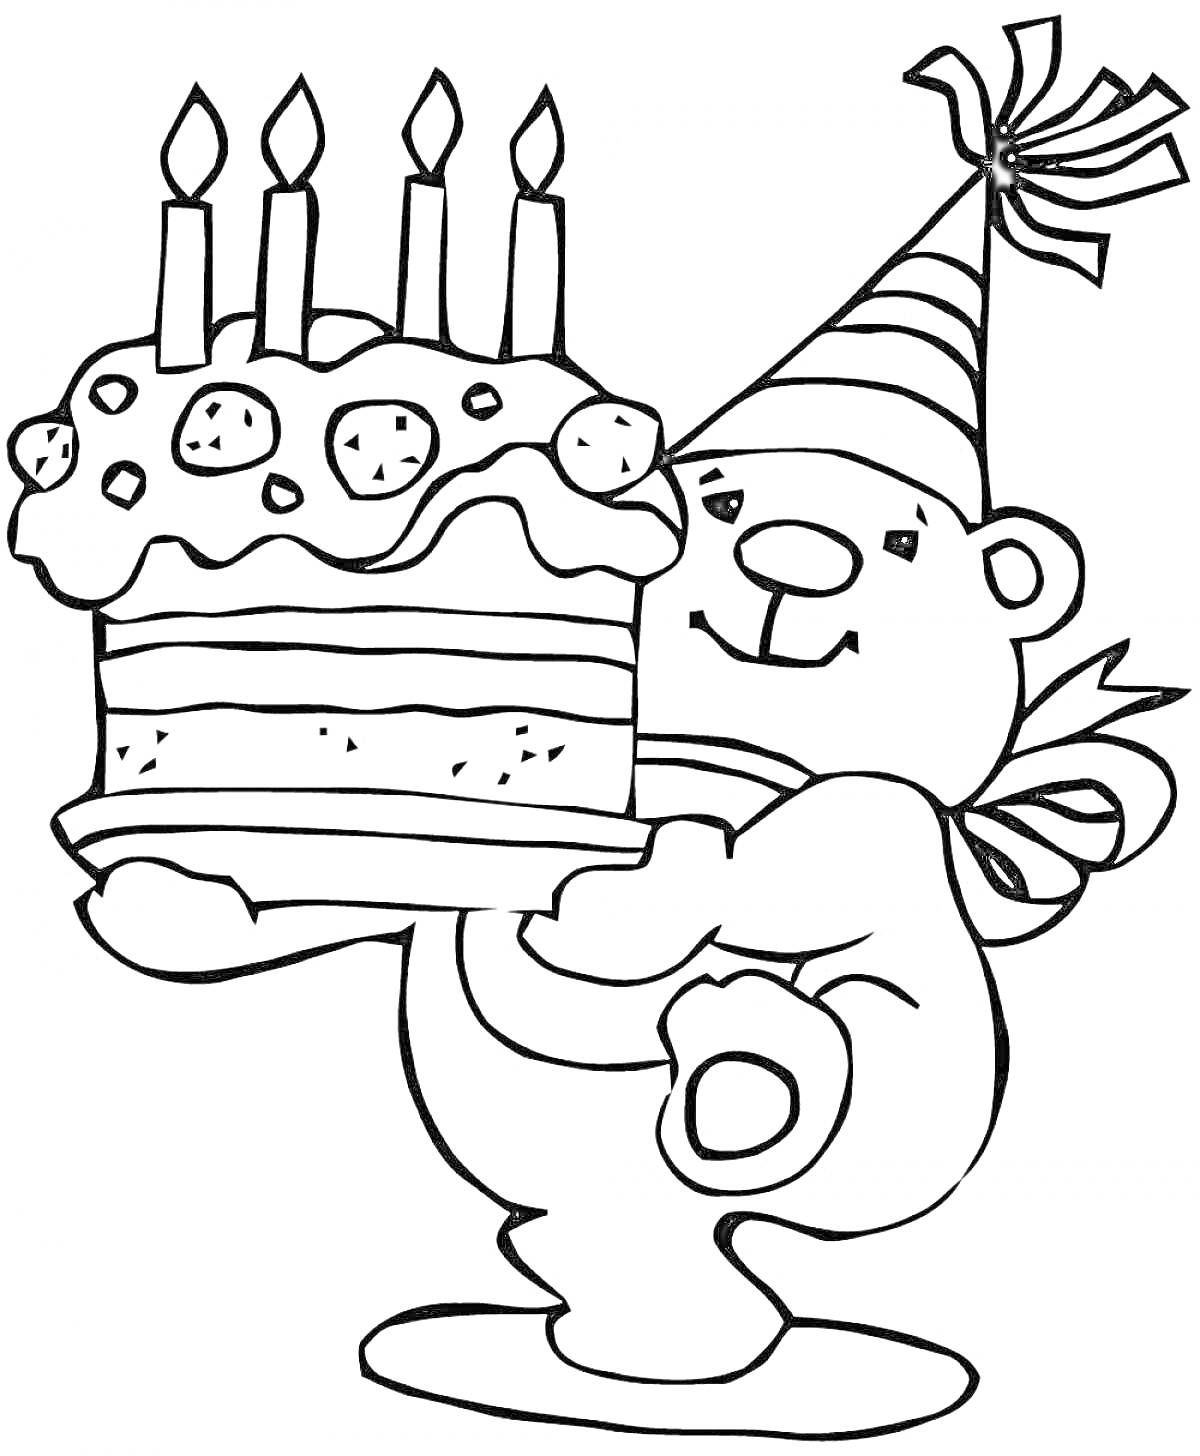 Раскраска Медведь в праздничном колпаке несет торт с зажженными свечами